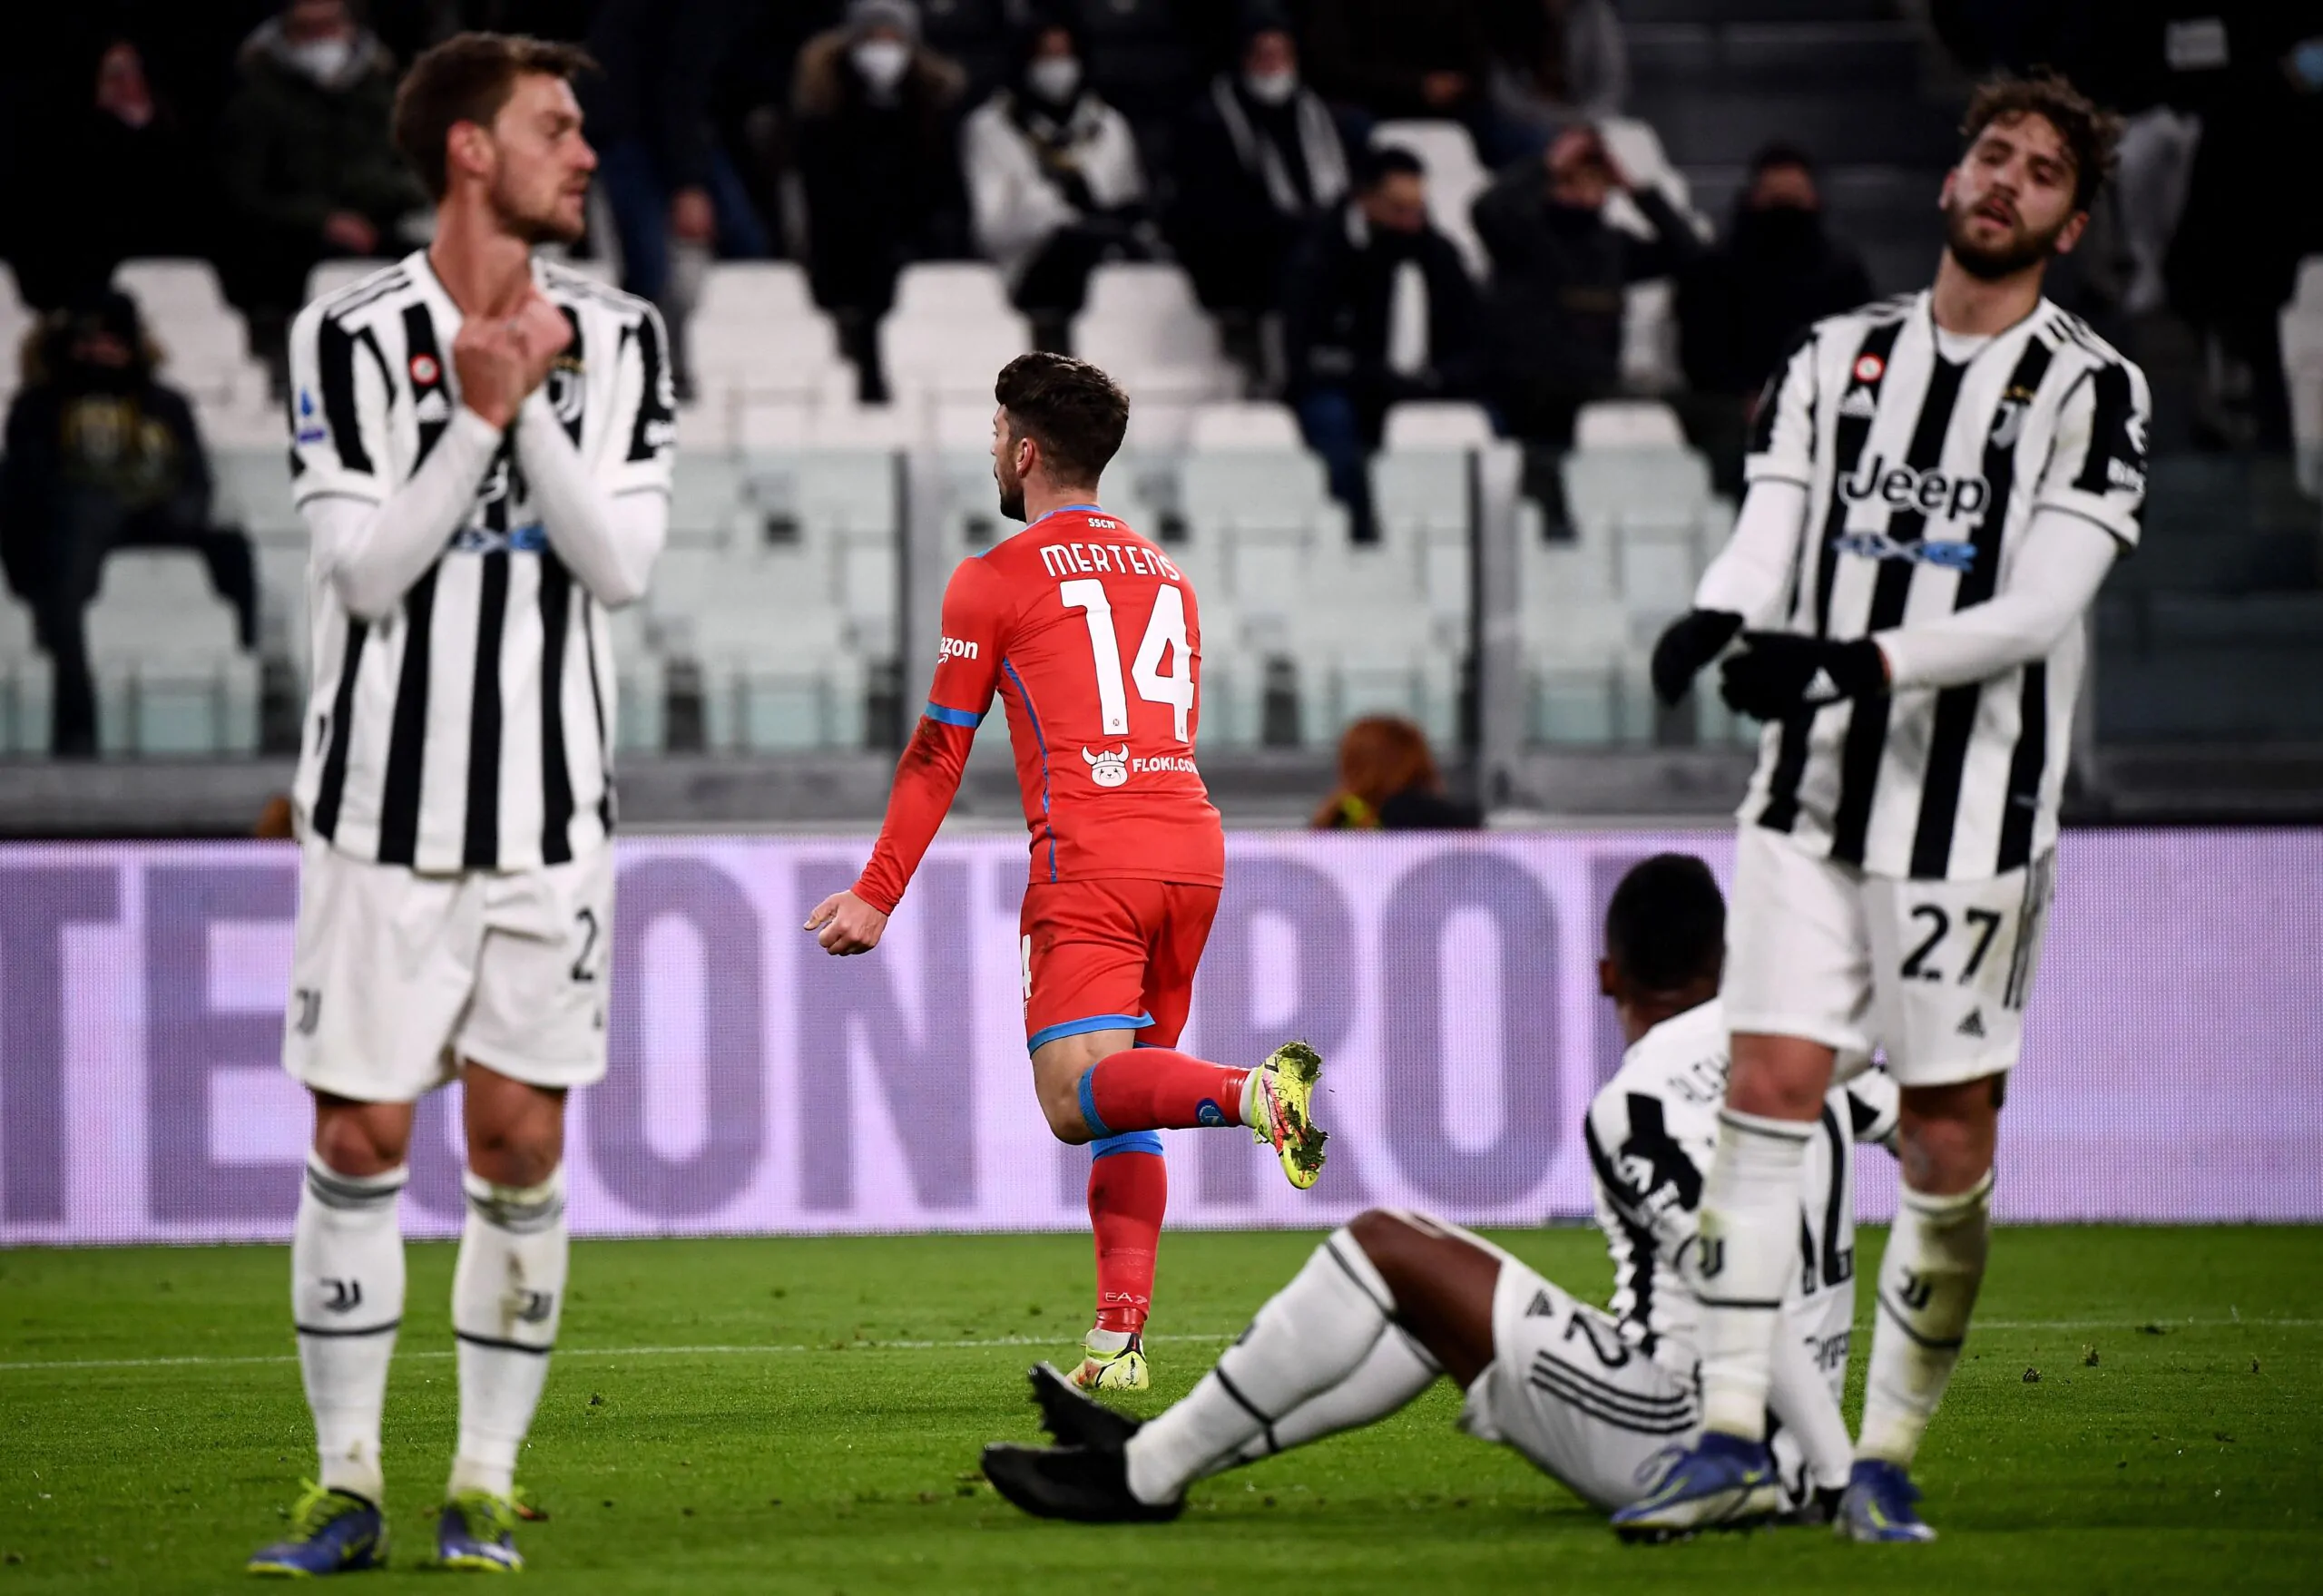 Nuovo obiettivo per la Juventus: qual è la differenza tra terzo e quarto posto in Serie A